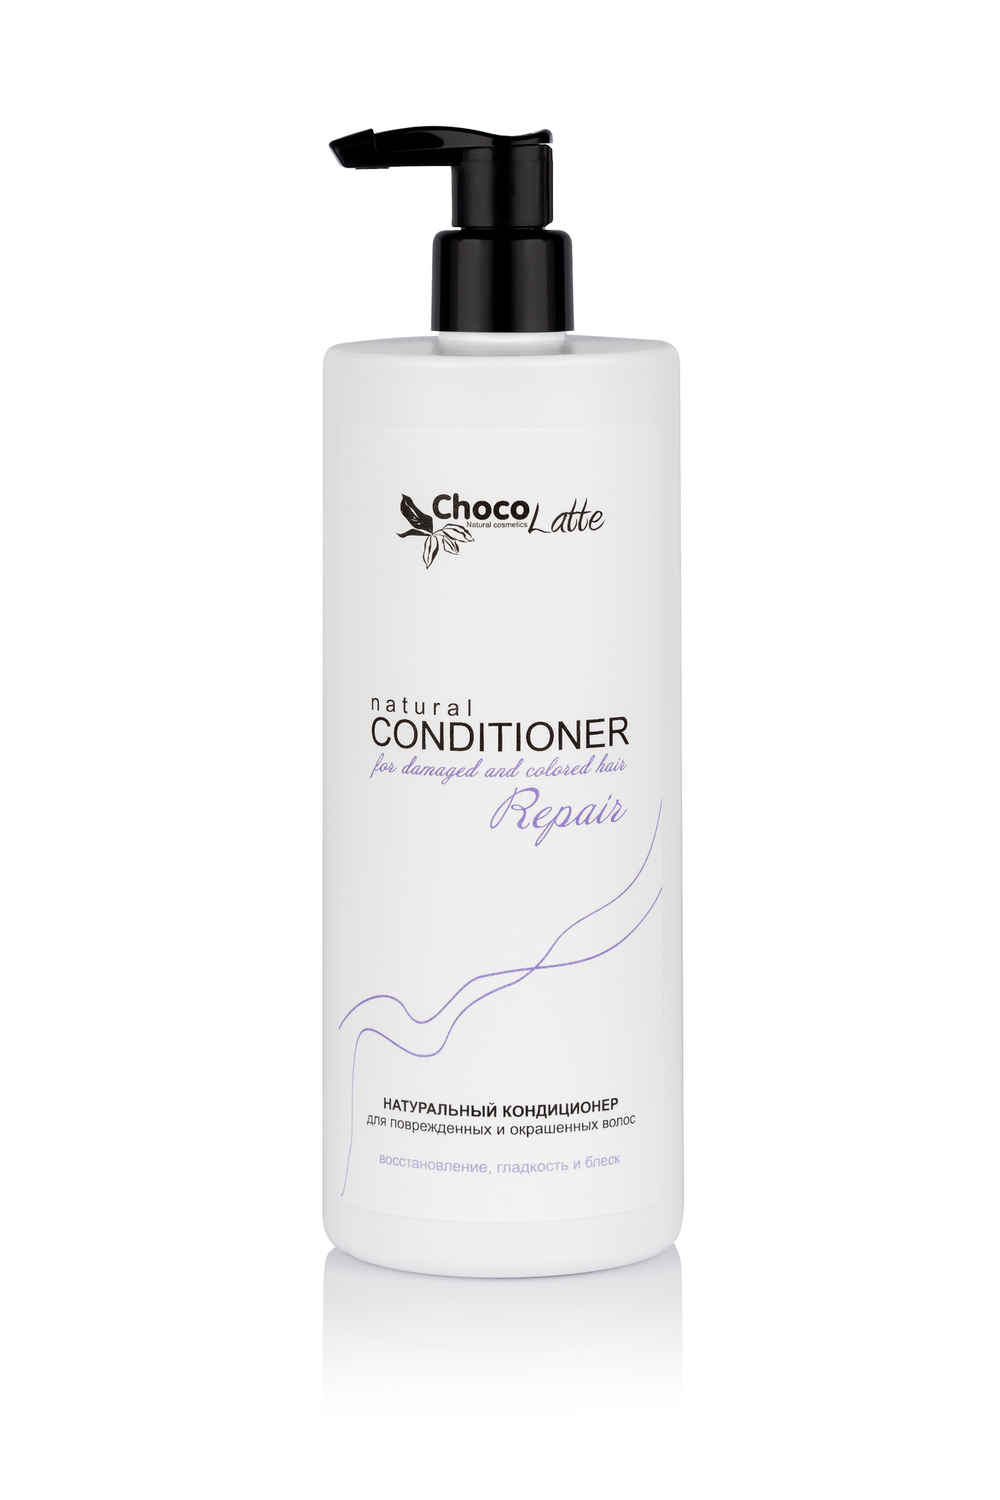 Кондиционер для поврежденных и окрашенных волос, восстановление, гладкость и блеск Repair | ChocoLatte